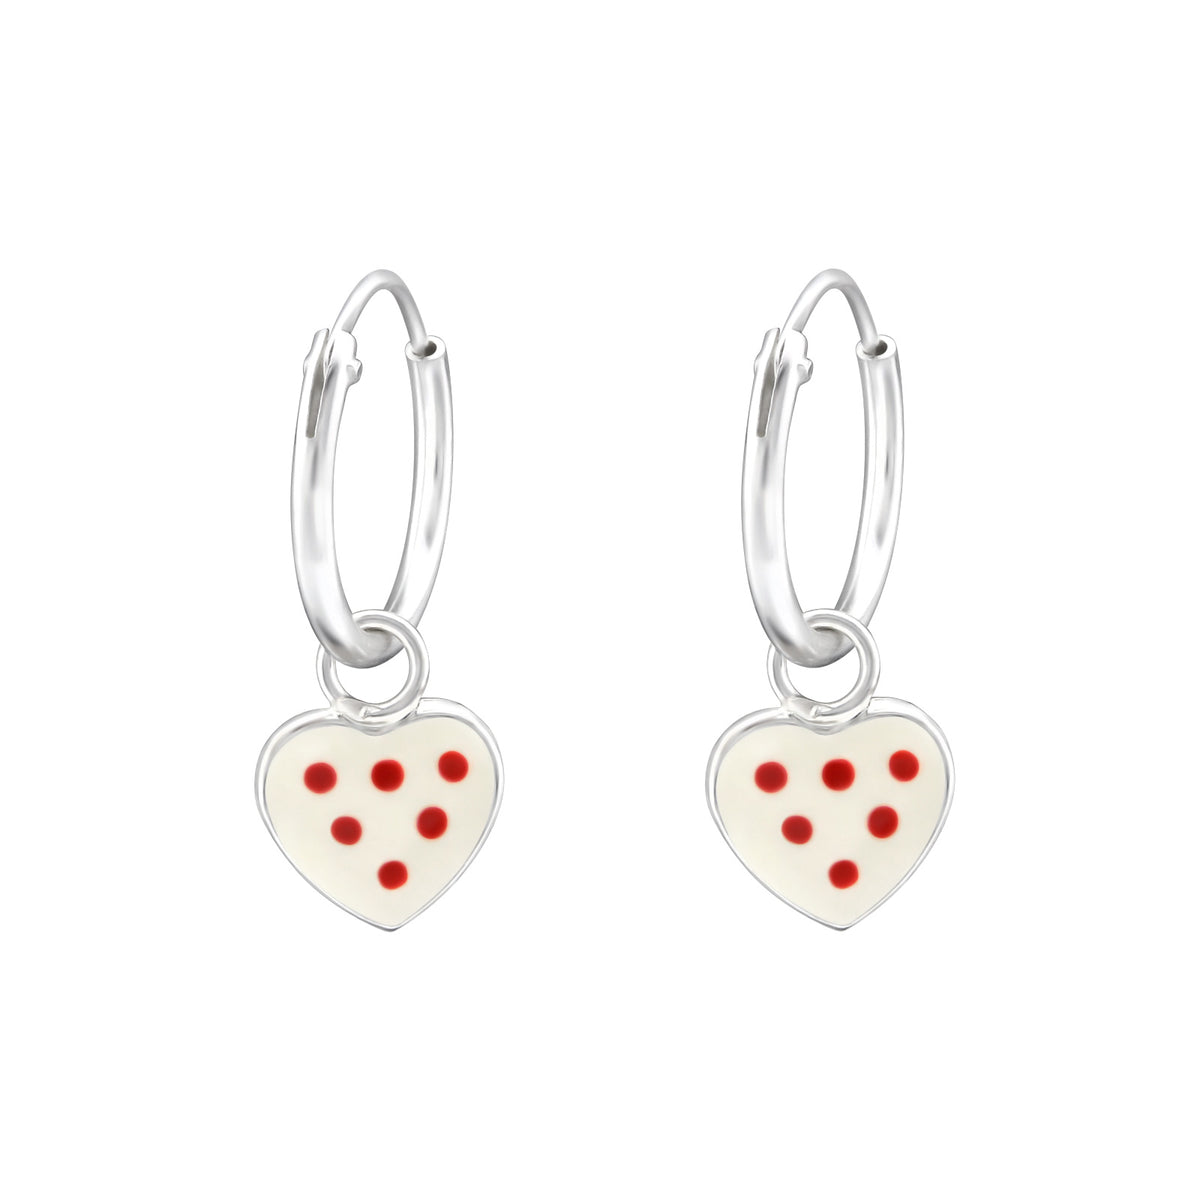 Kinder Mädchen Creolen Ohrringe Herz mit roten punkten 925er Silber Kinderschmuck - Cristal-Jewelry